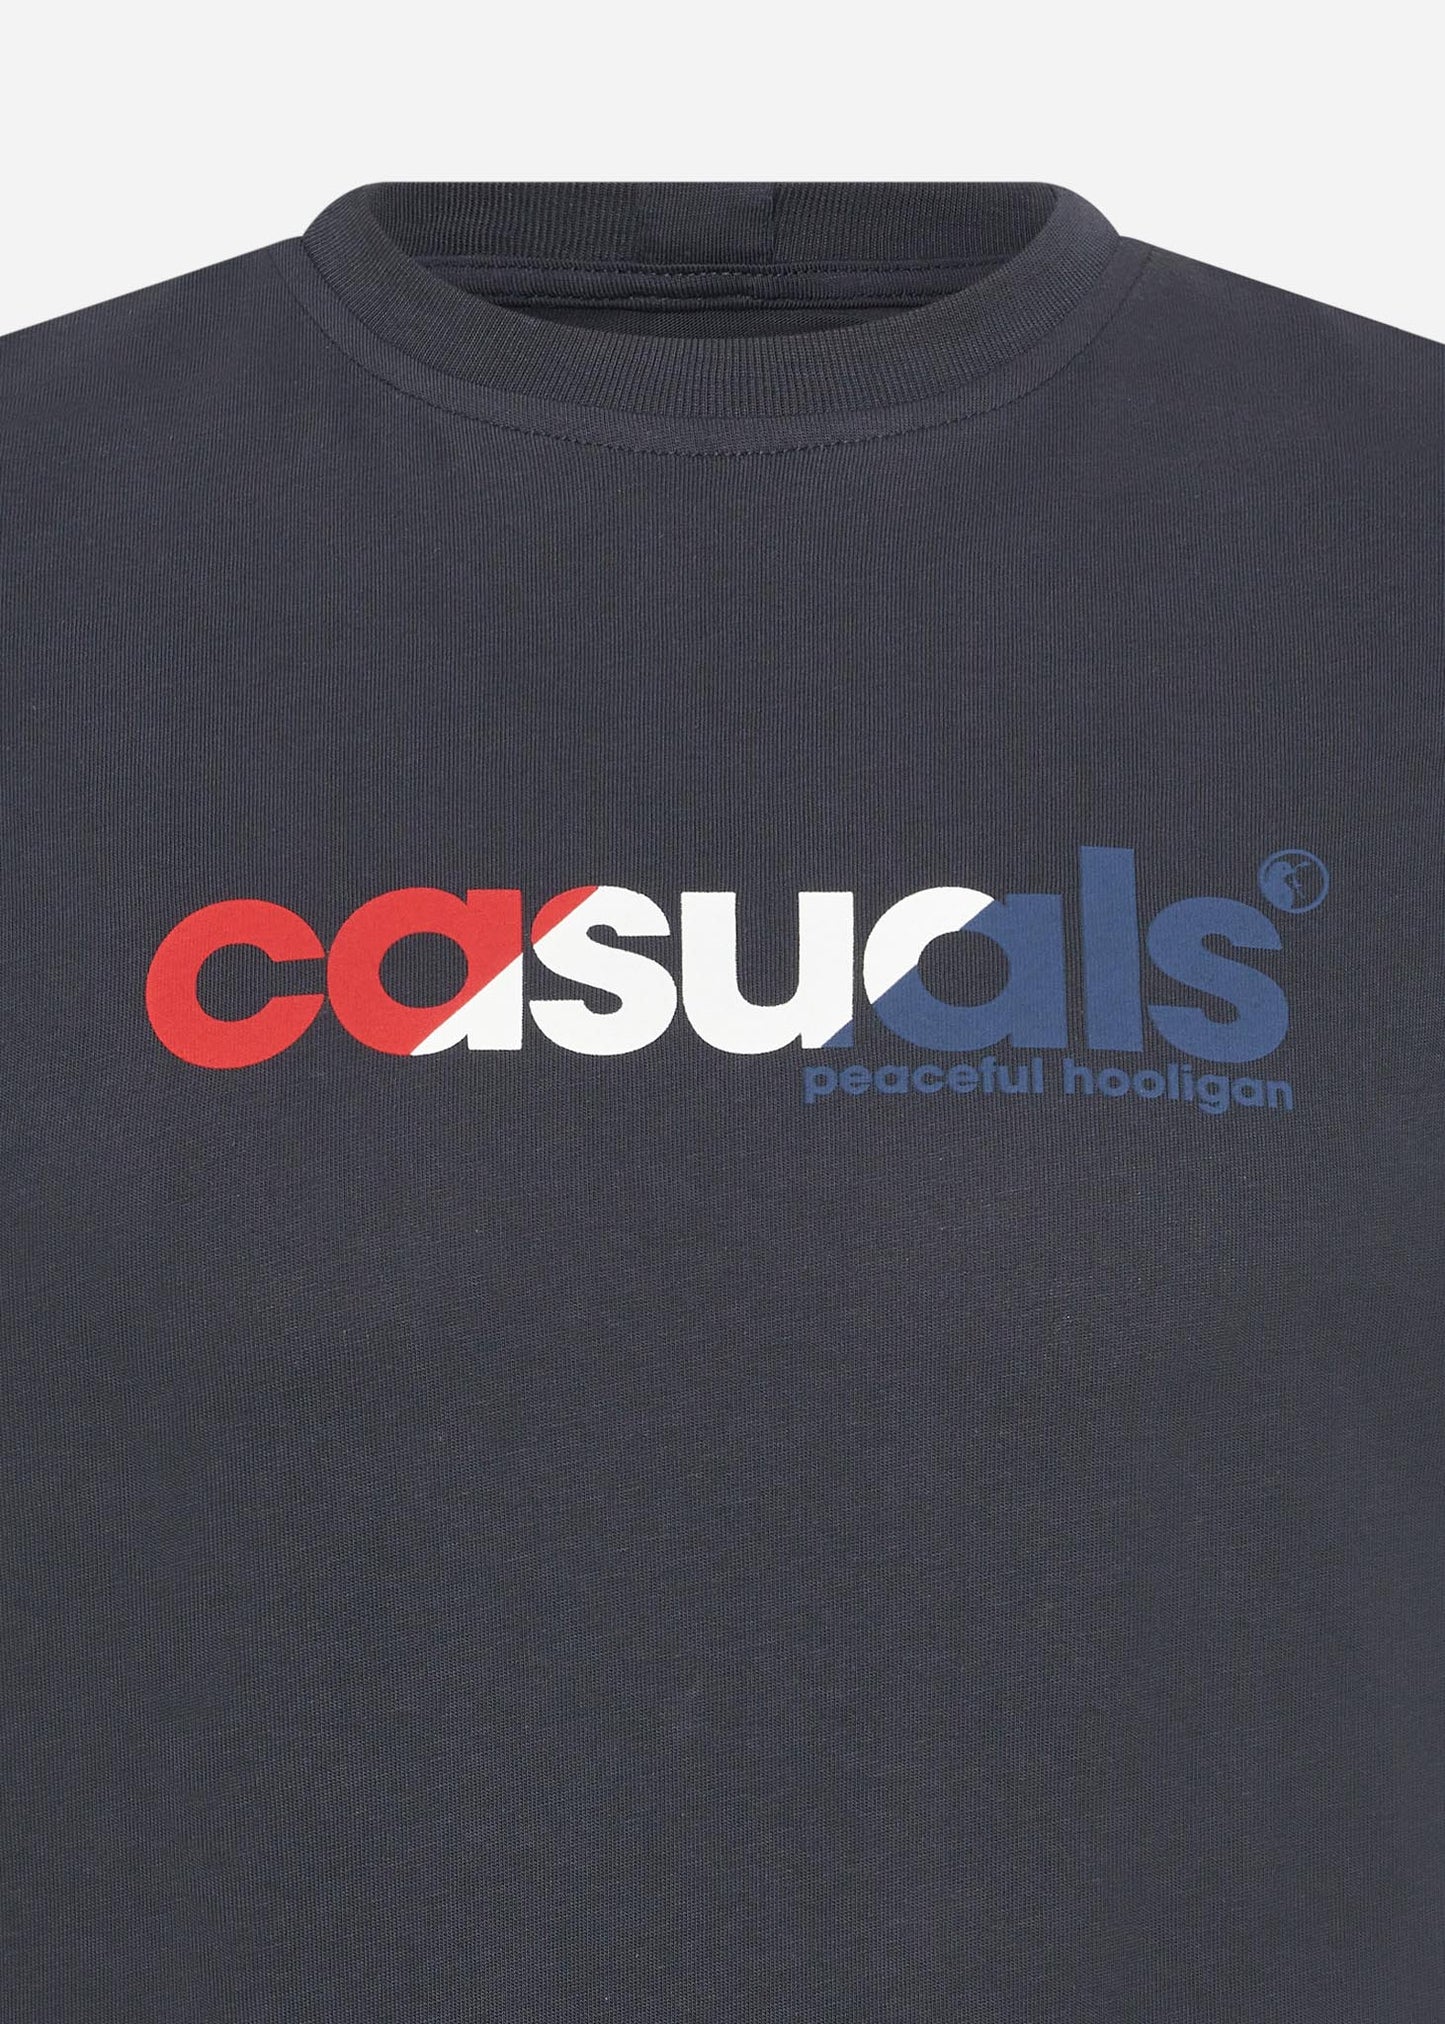 Casuals rwb t-shirt - navy